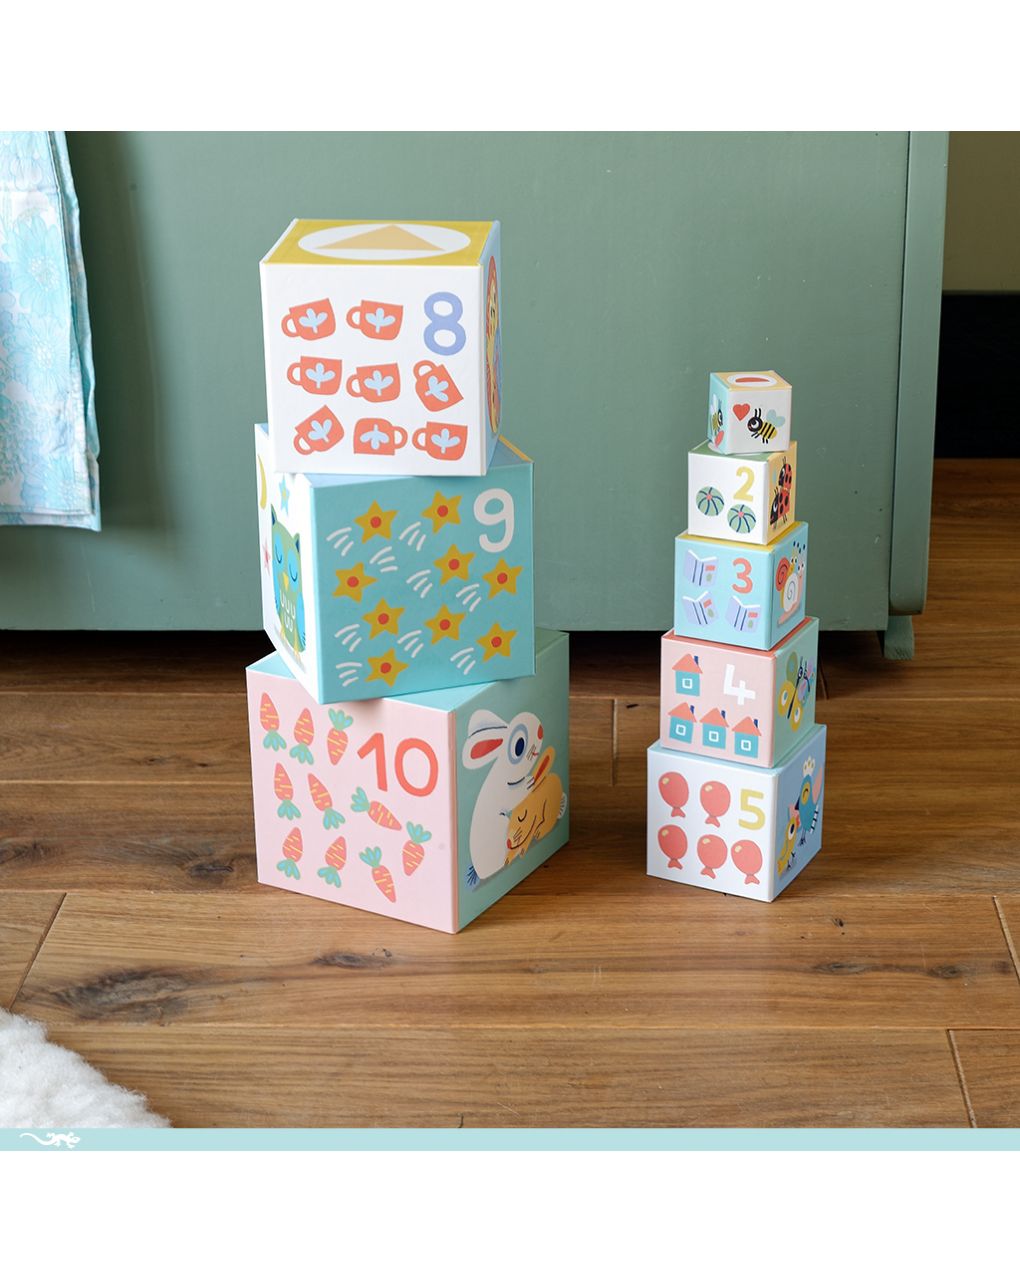 Babybloki 10 cubi sovrapponibili in cartone - djeco